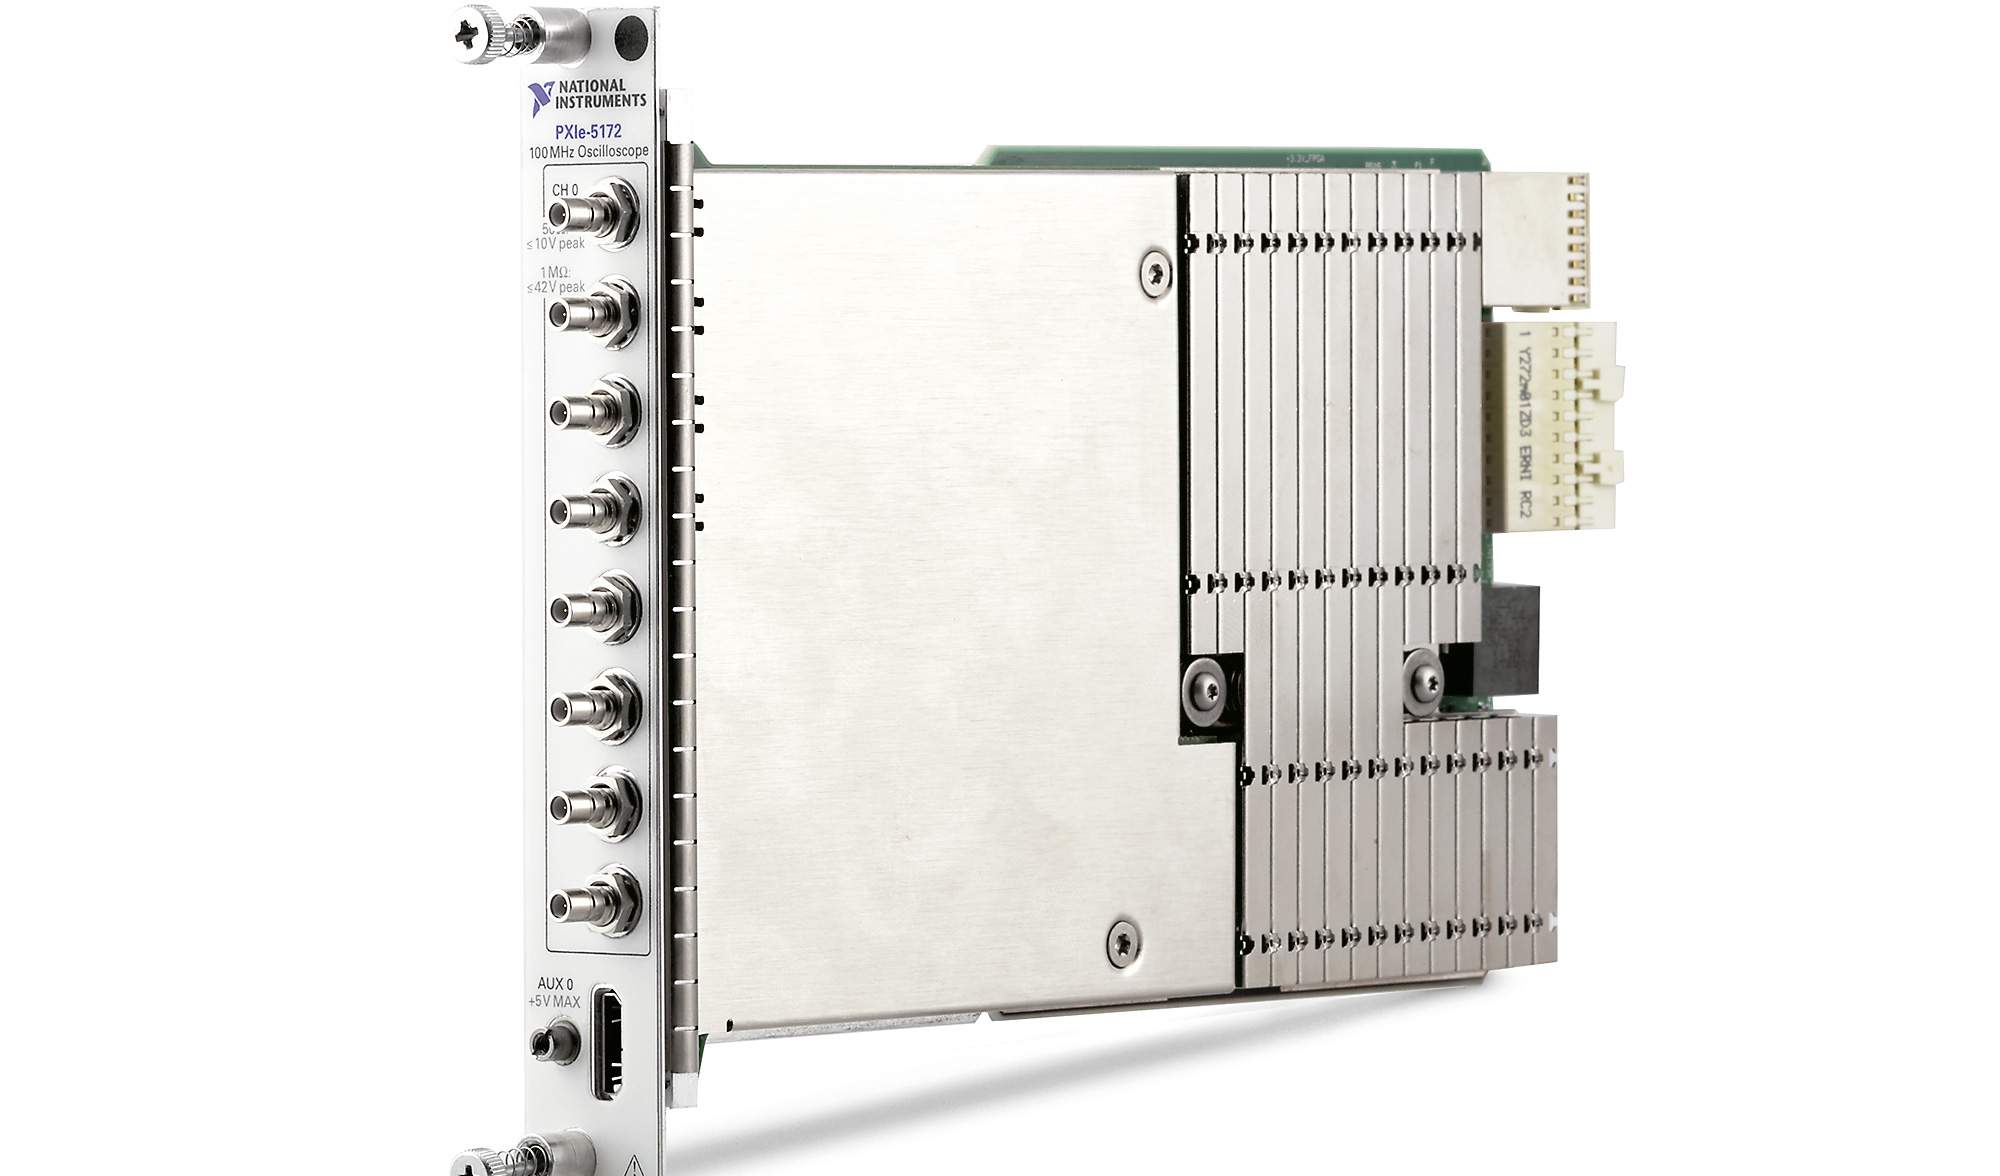 El nuevo osciloscopio NI PXIe-5172 incluye una FPGA programable por el usuario